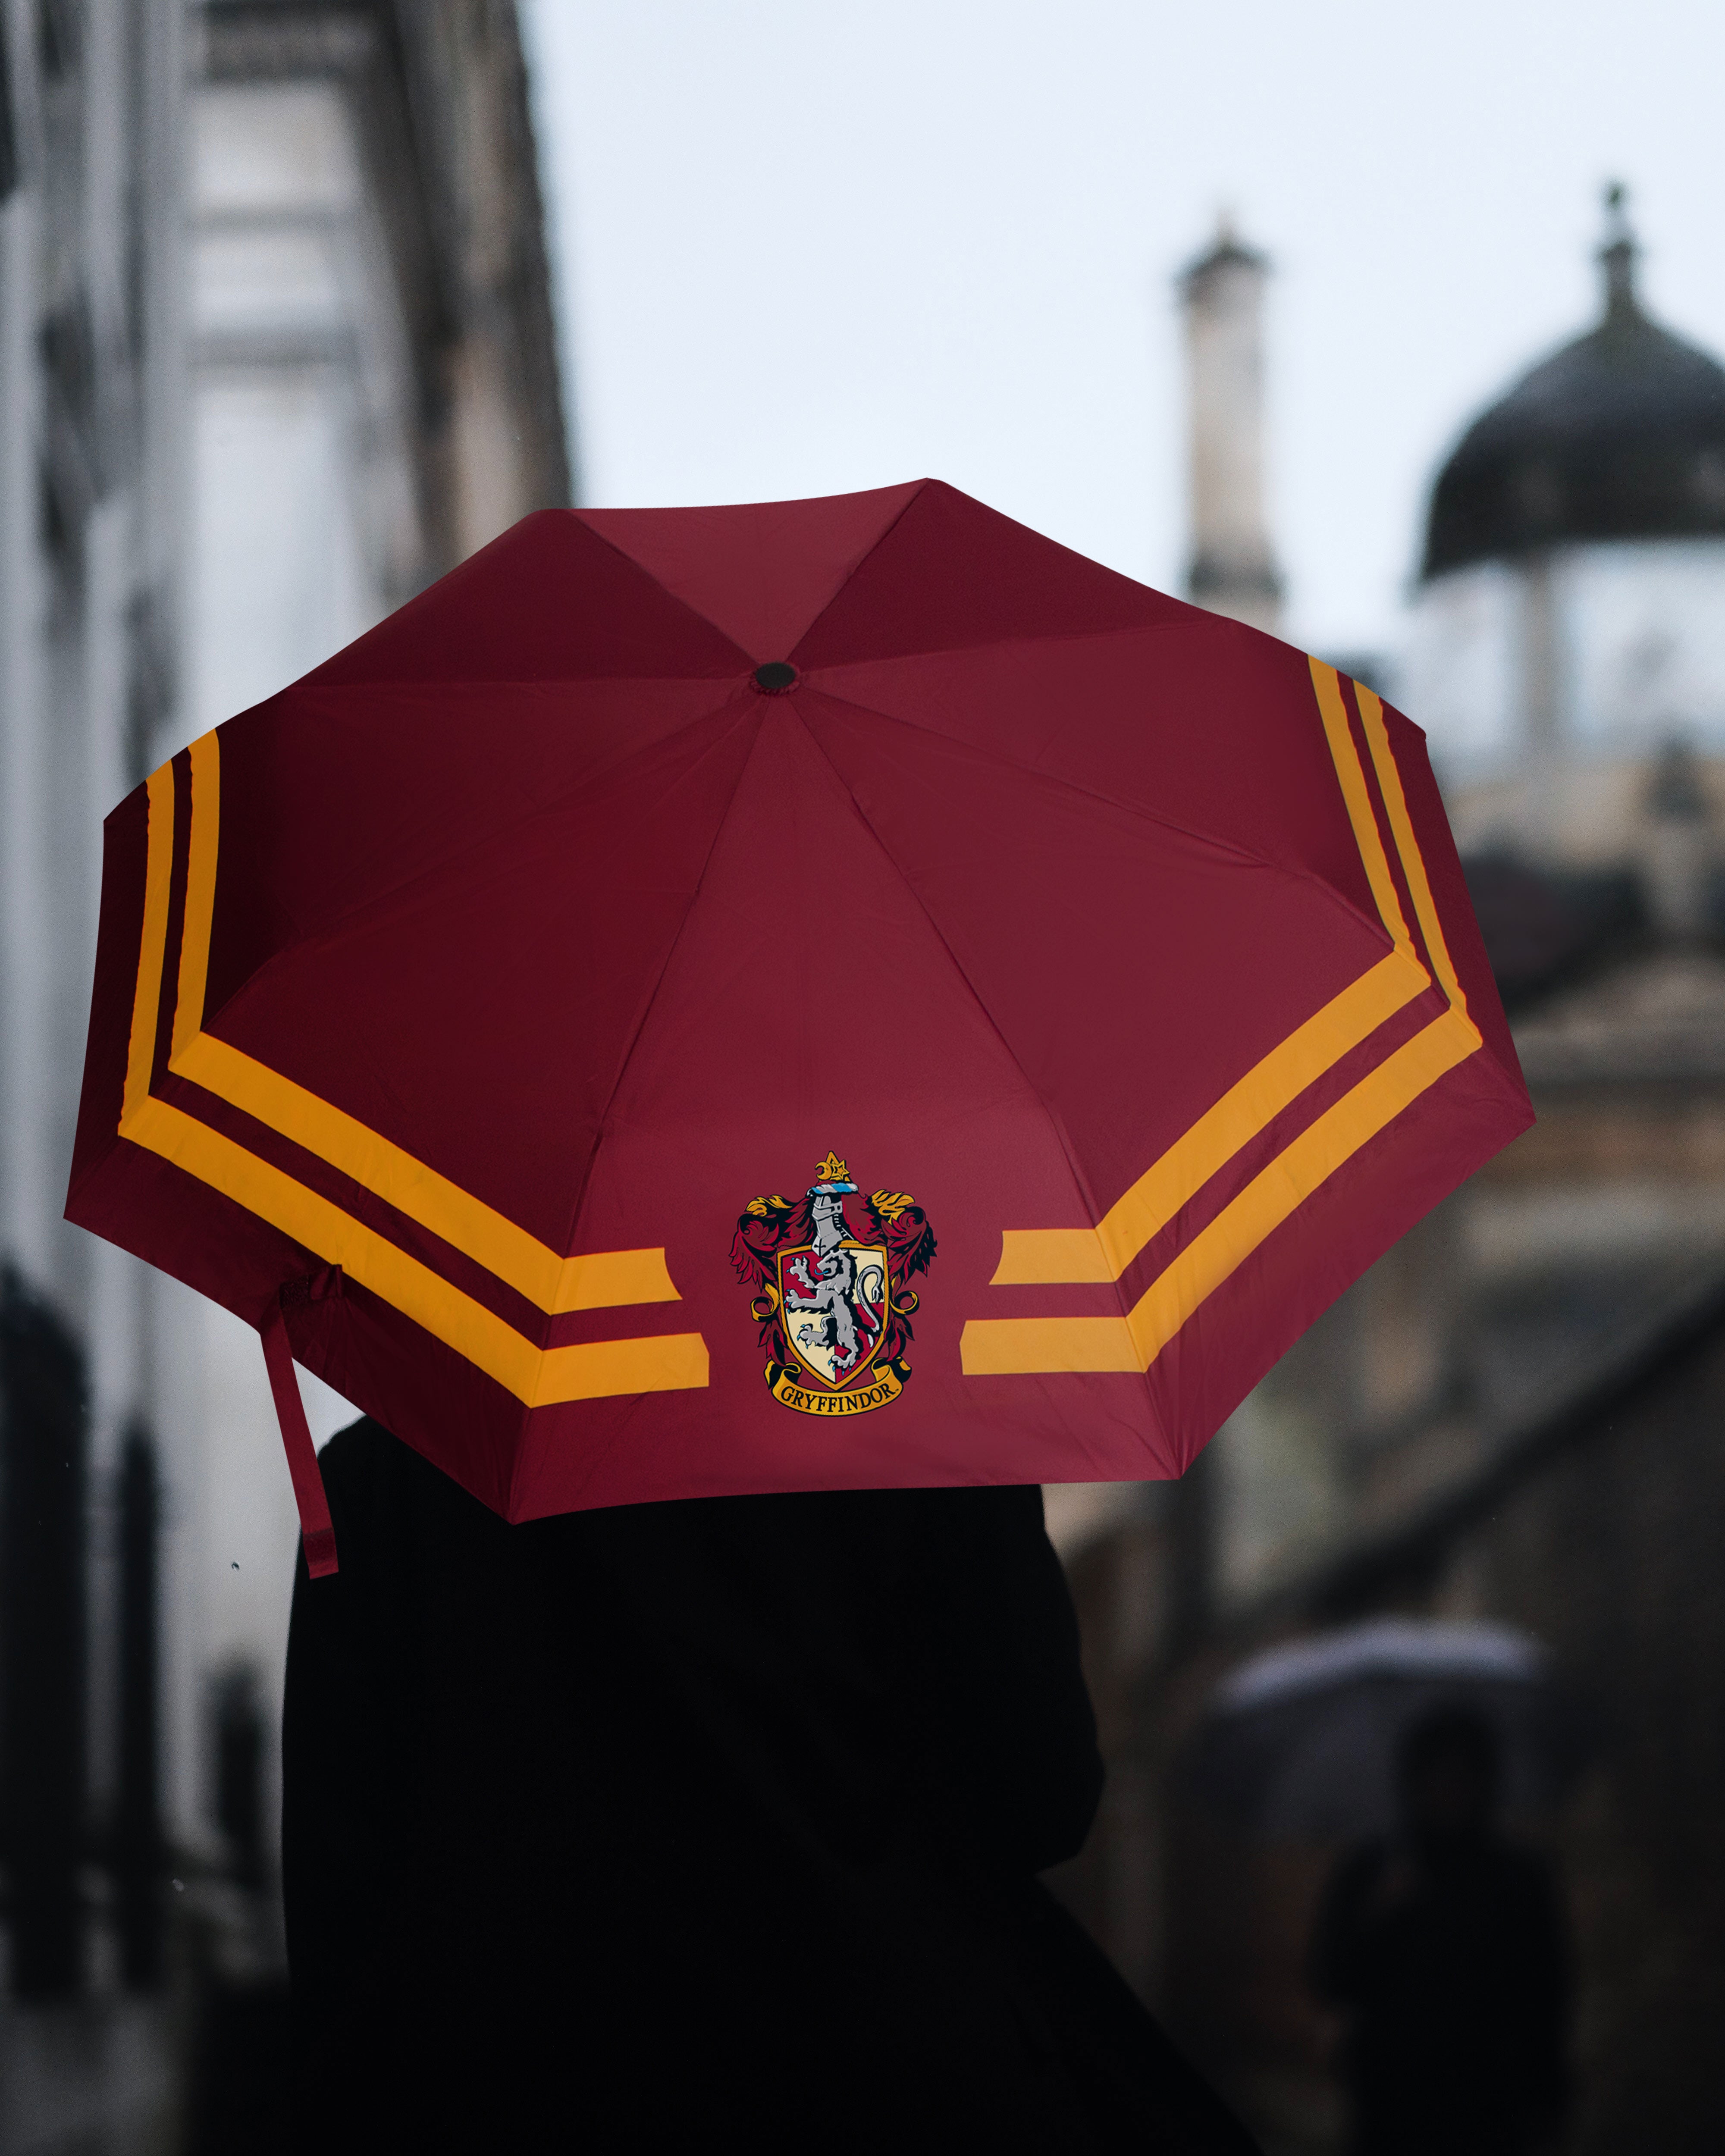 Parapluie Vif d'or Harry Potter™ - Noir